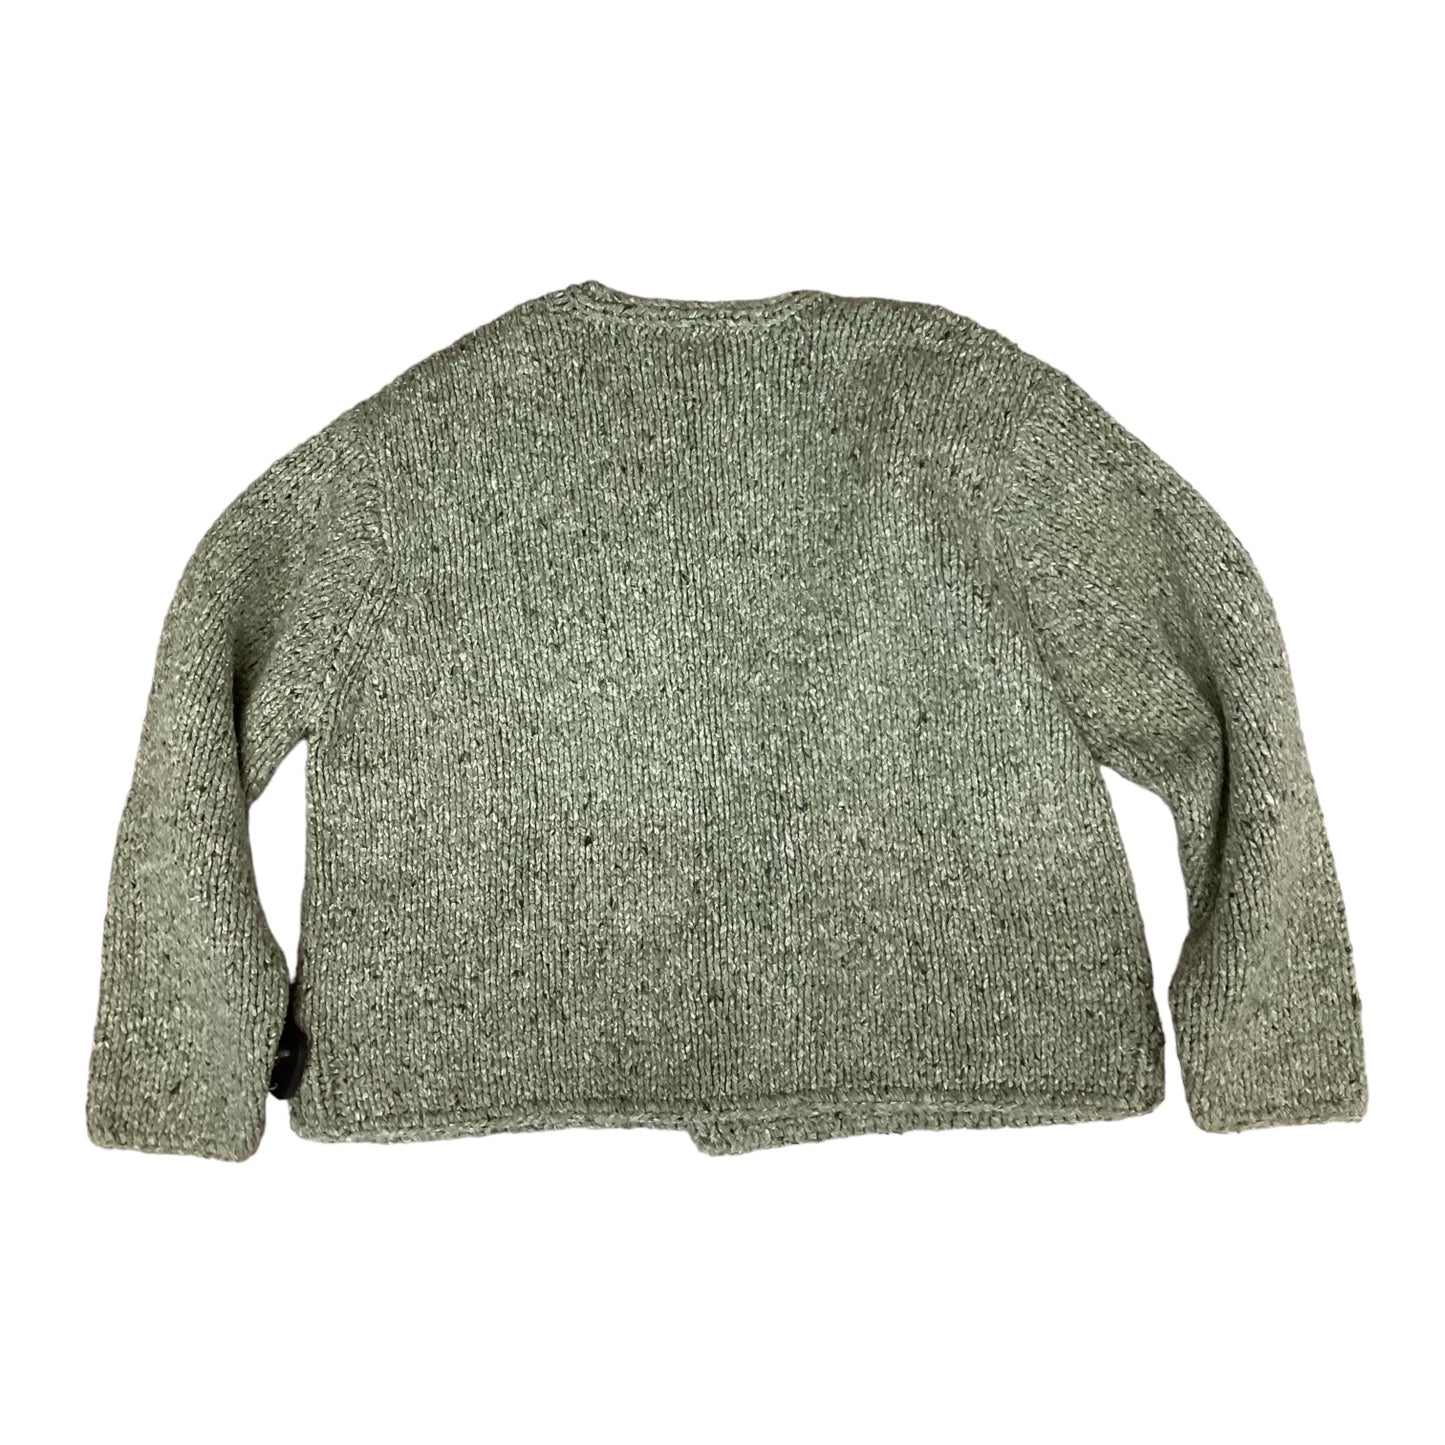 Sweater Cardigan By J Jill  Size: L